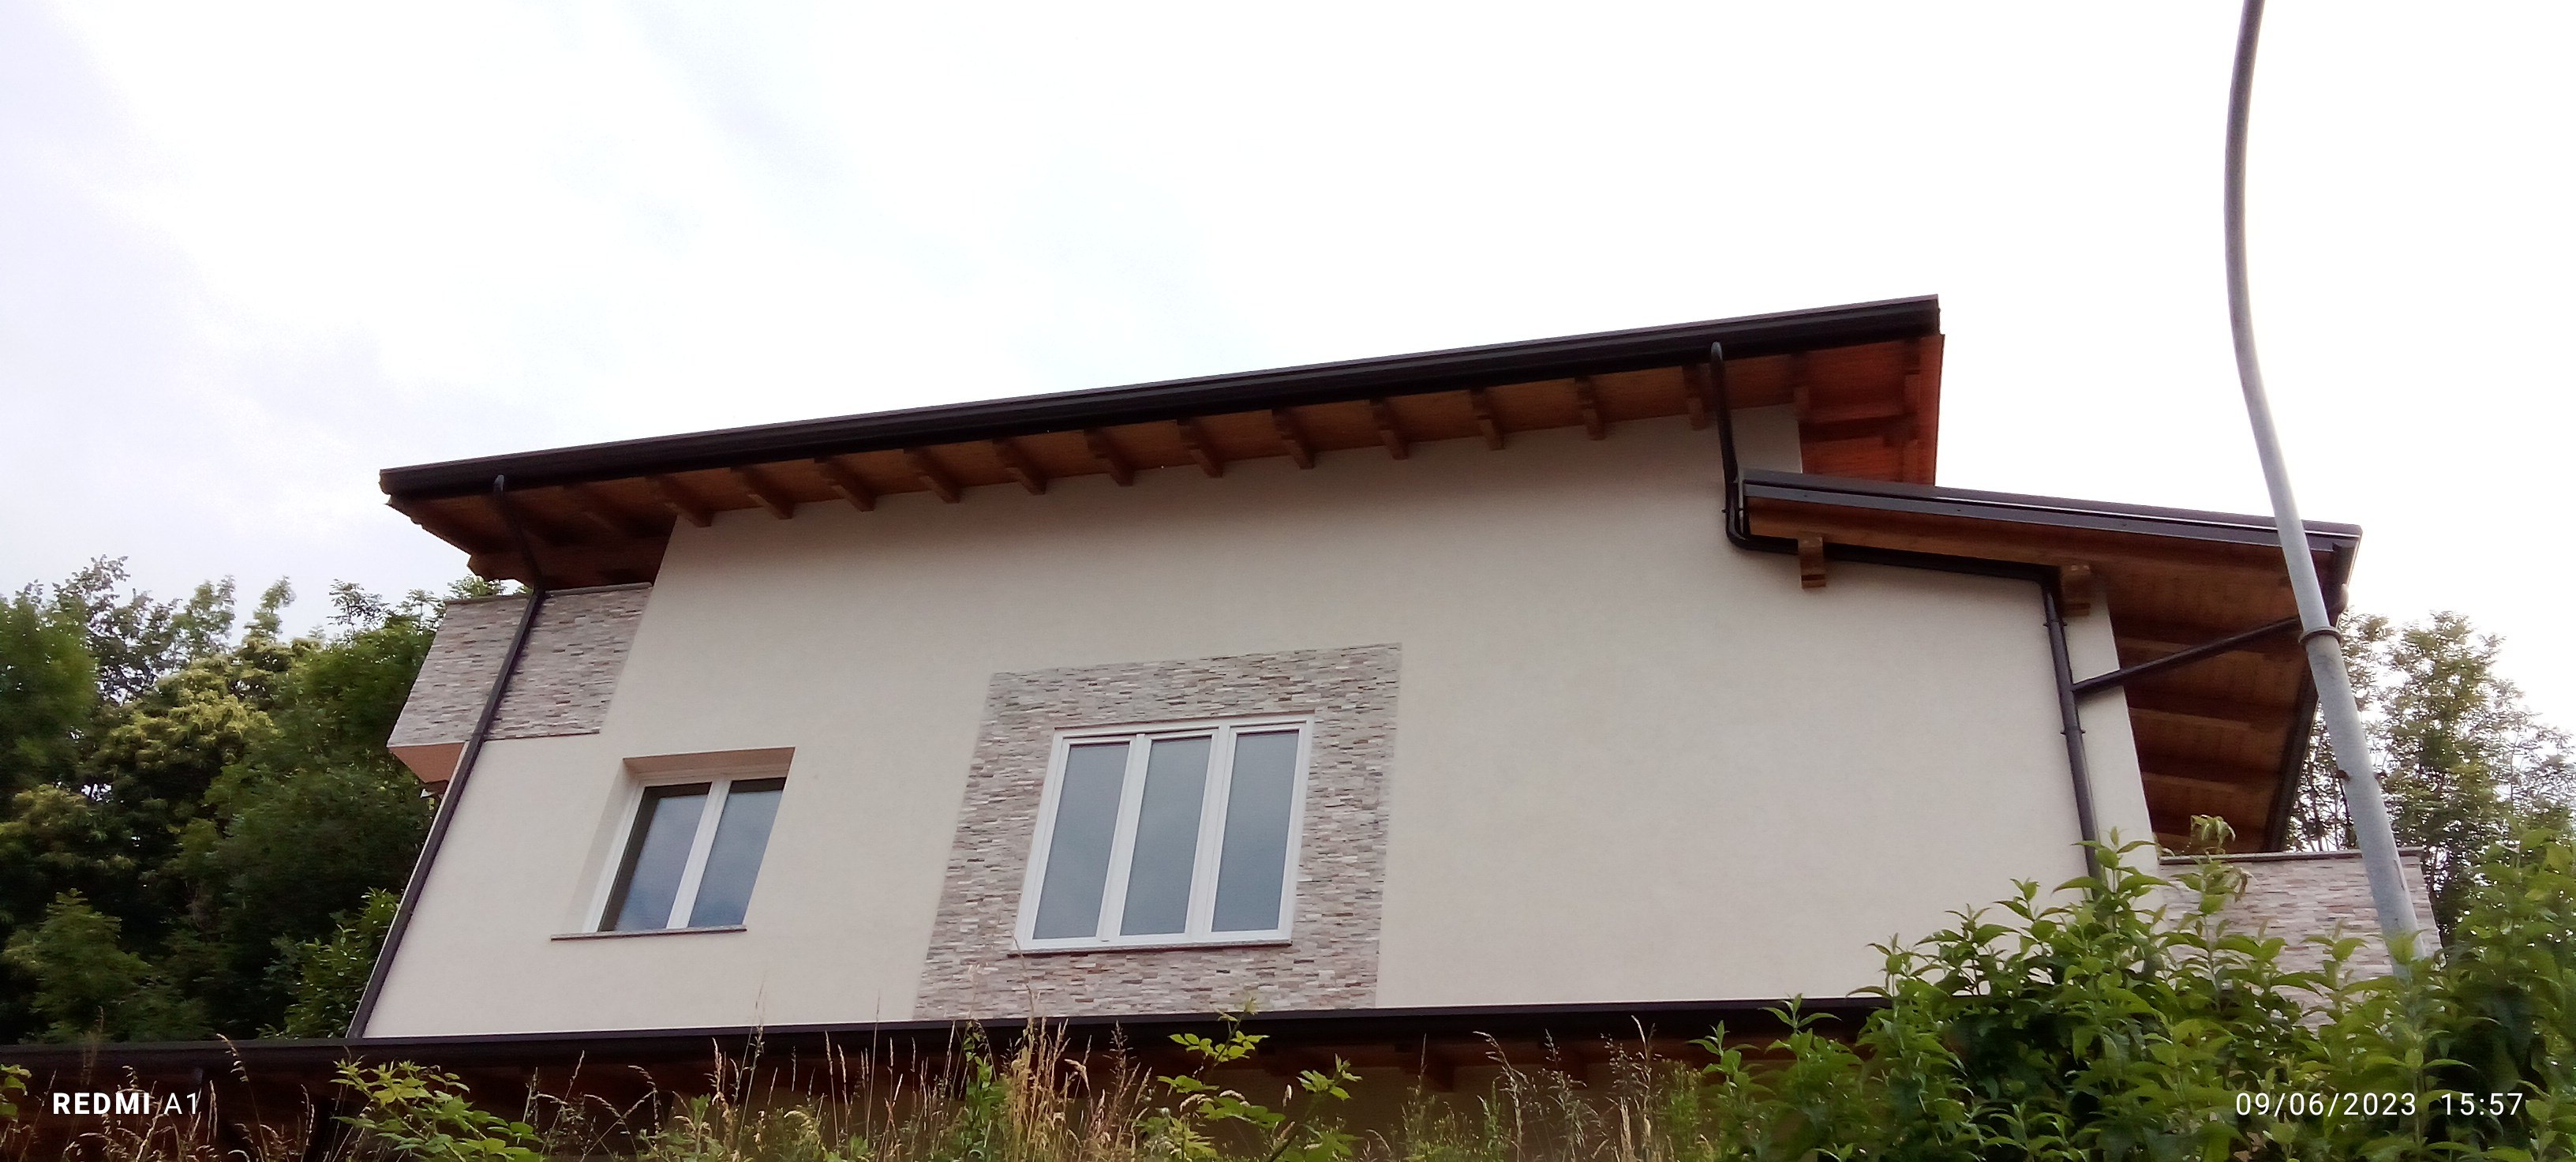 Planimetria della costruzione Casa in Legno modello Casa a Telaio in Legno Lamellare  di BCL Bergamasca Costruzioni Legno